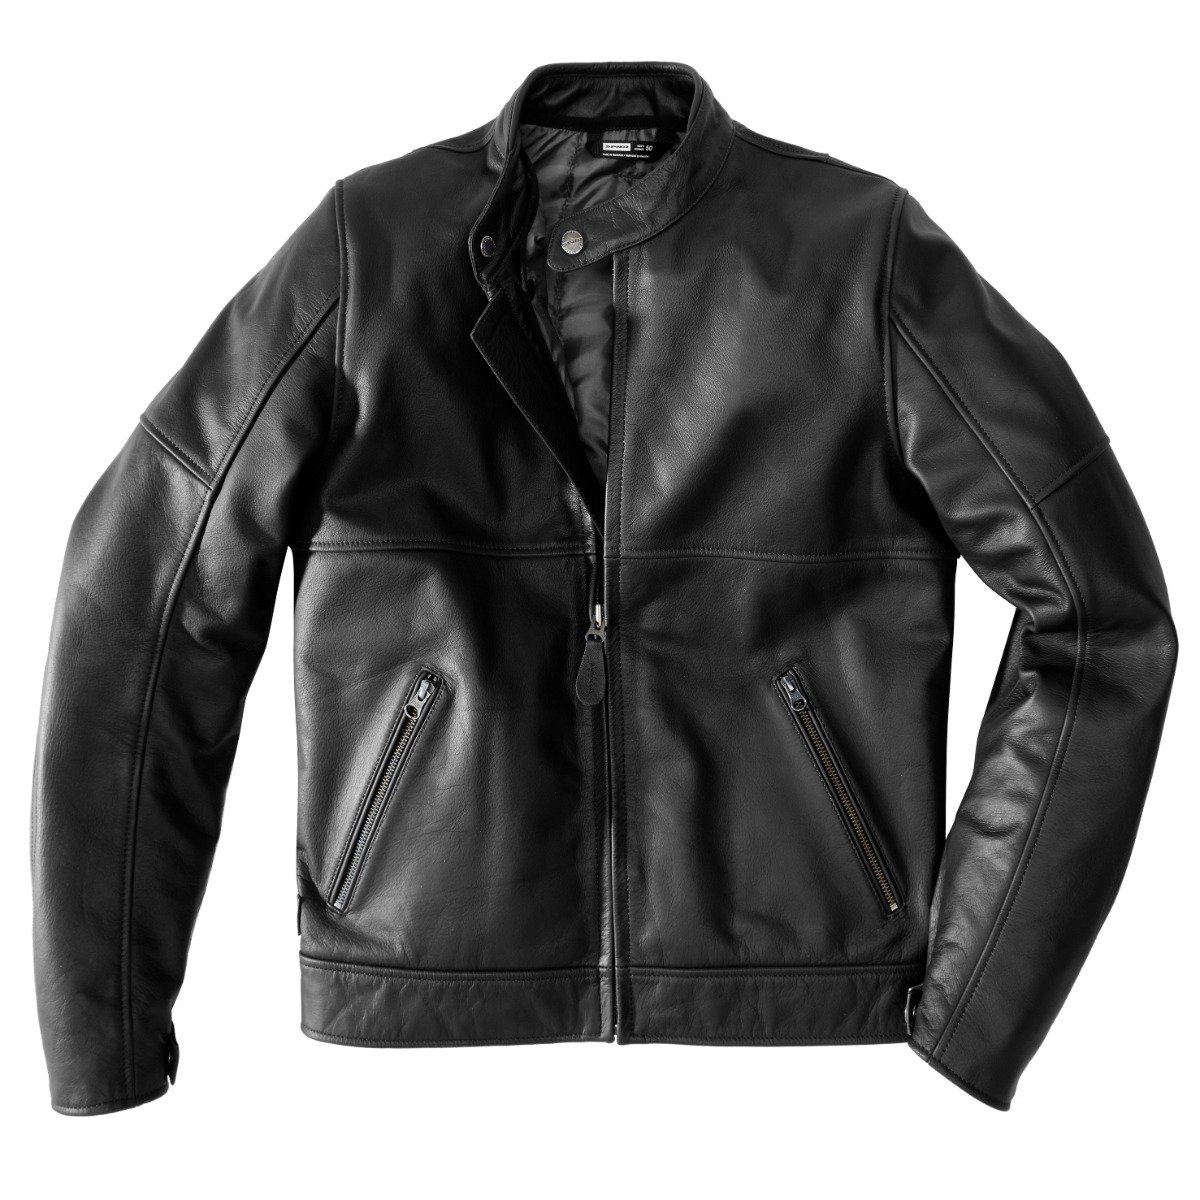 Image of Spidi Mack Jacket Black Size 50 ID 8030161448368